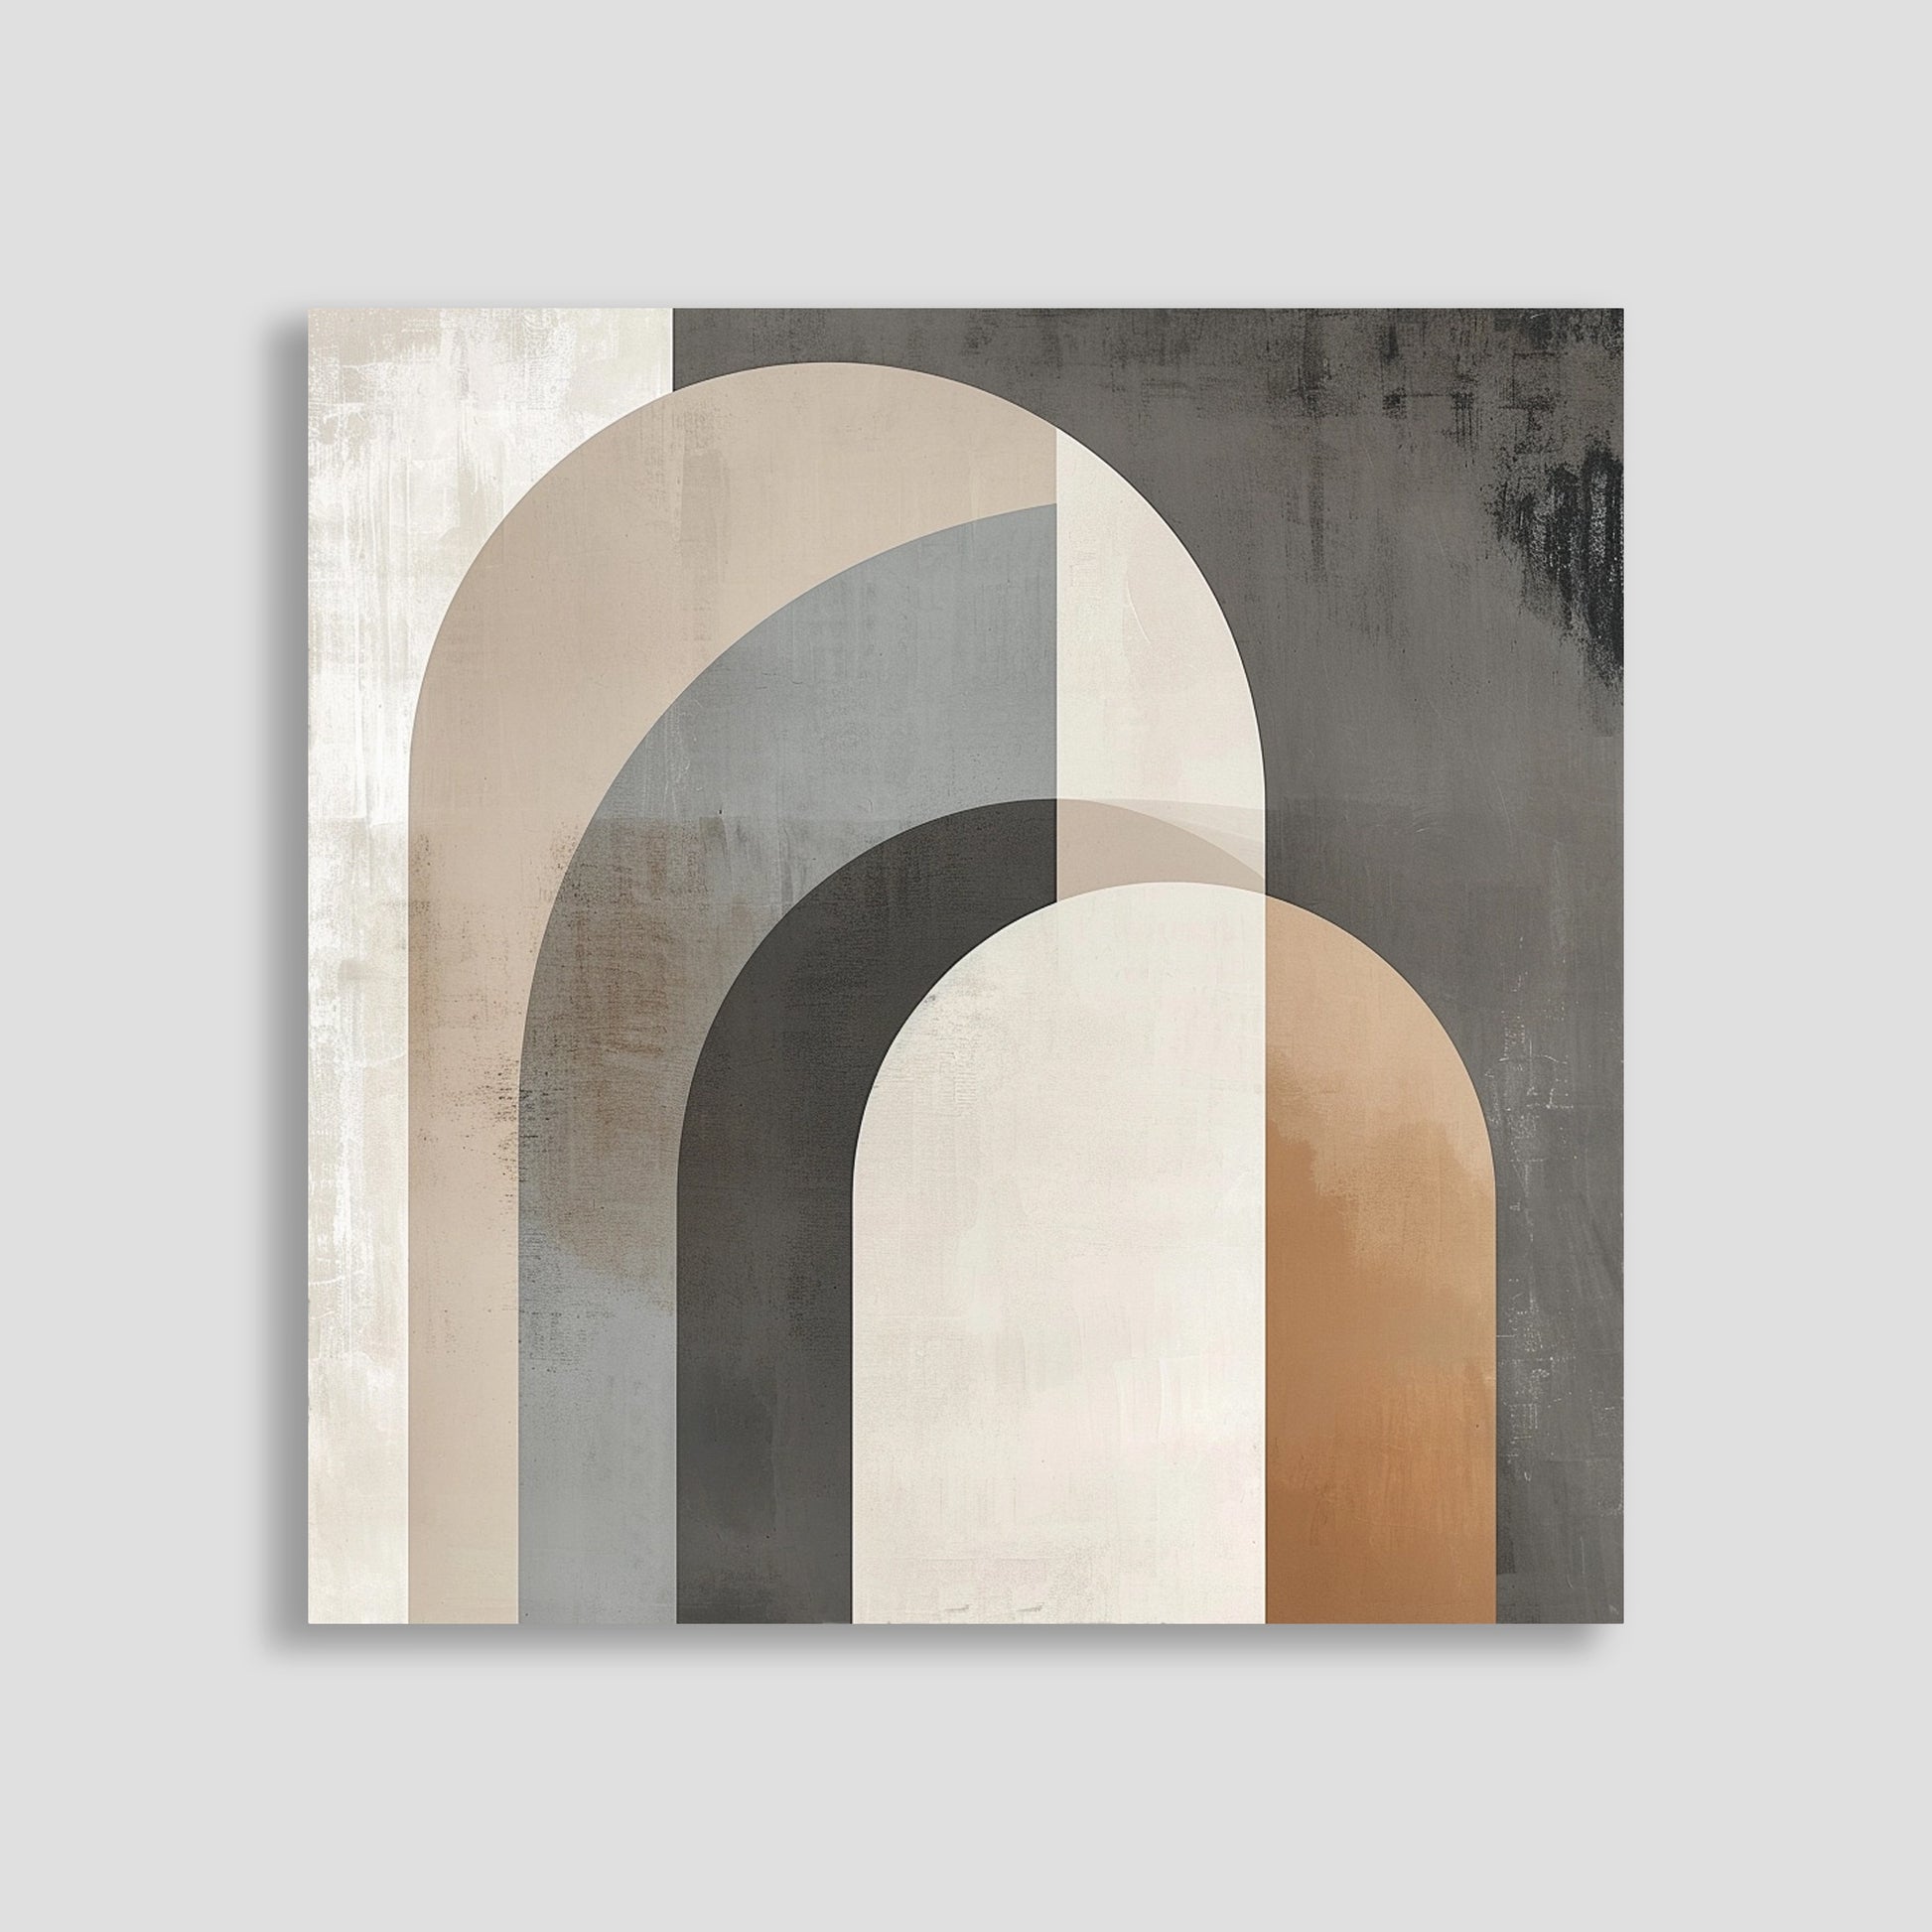 Arte abstracto con diseño geométrico de arcos en tonos beige, gris y marrón.